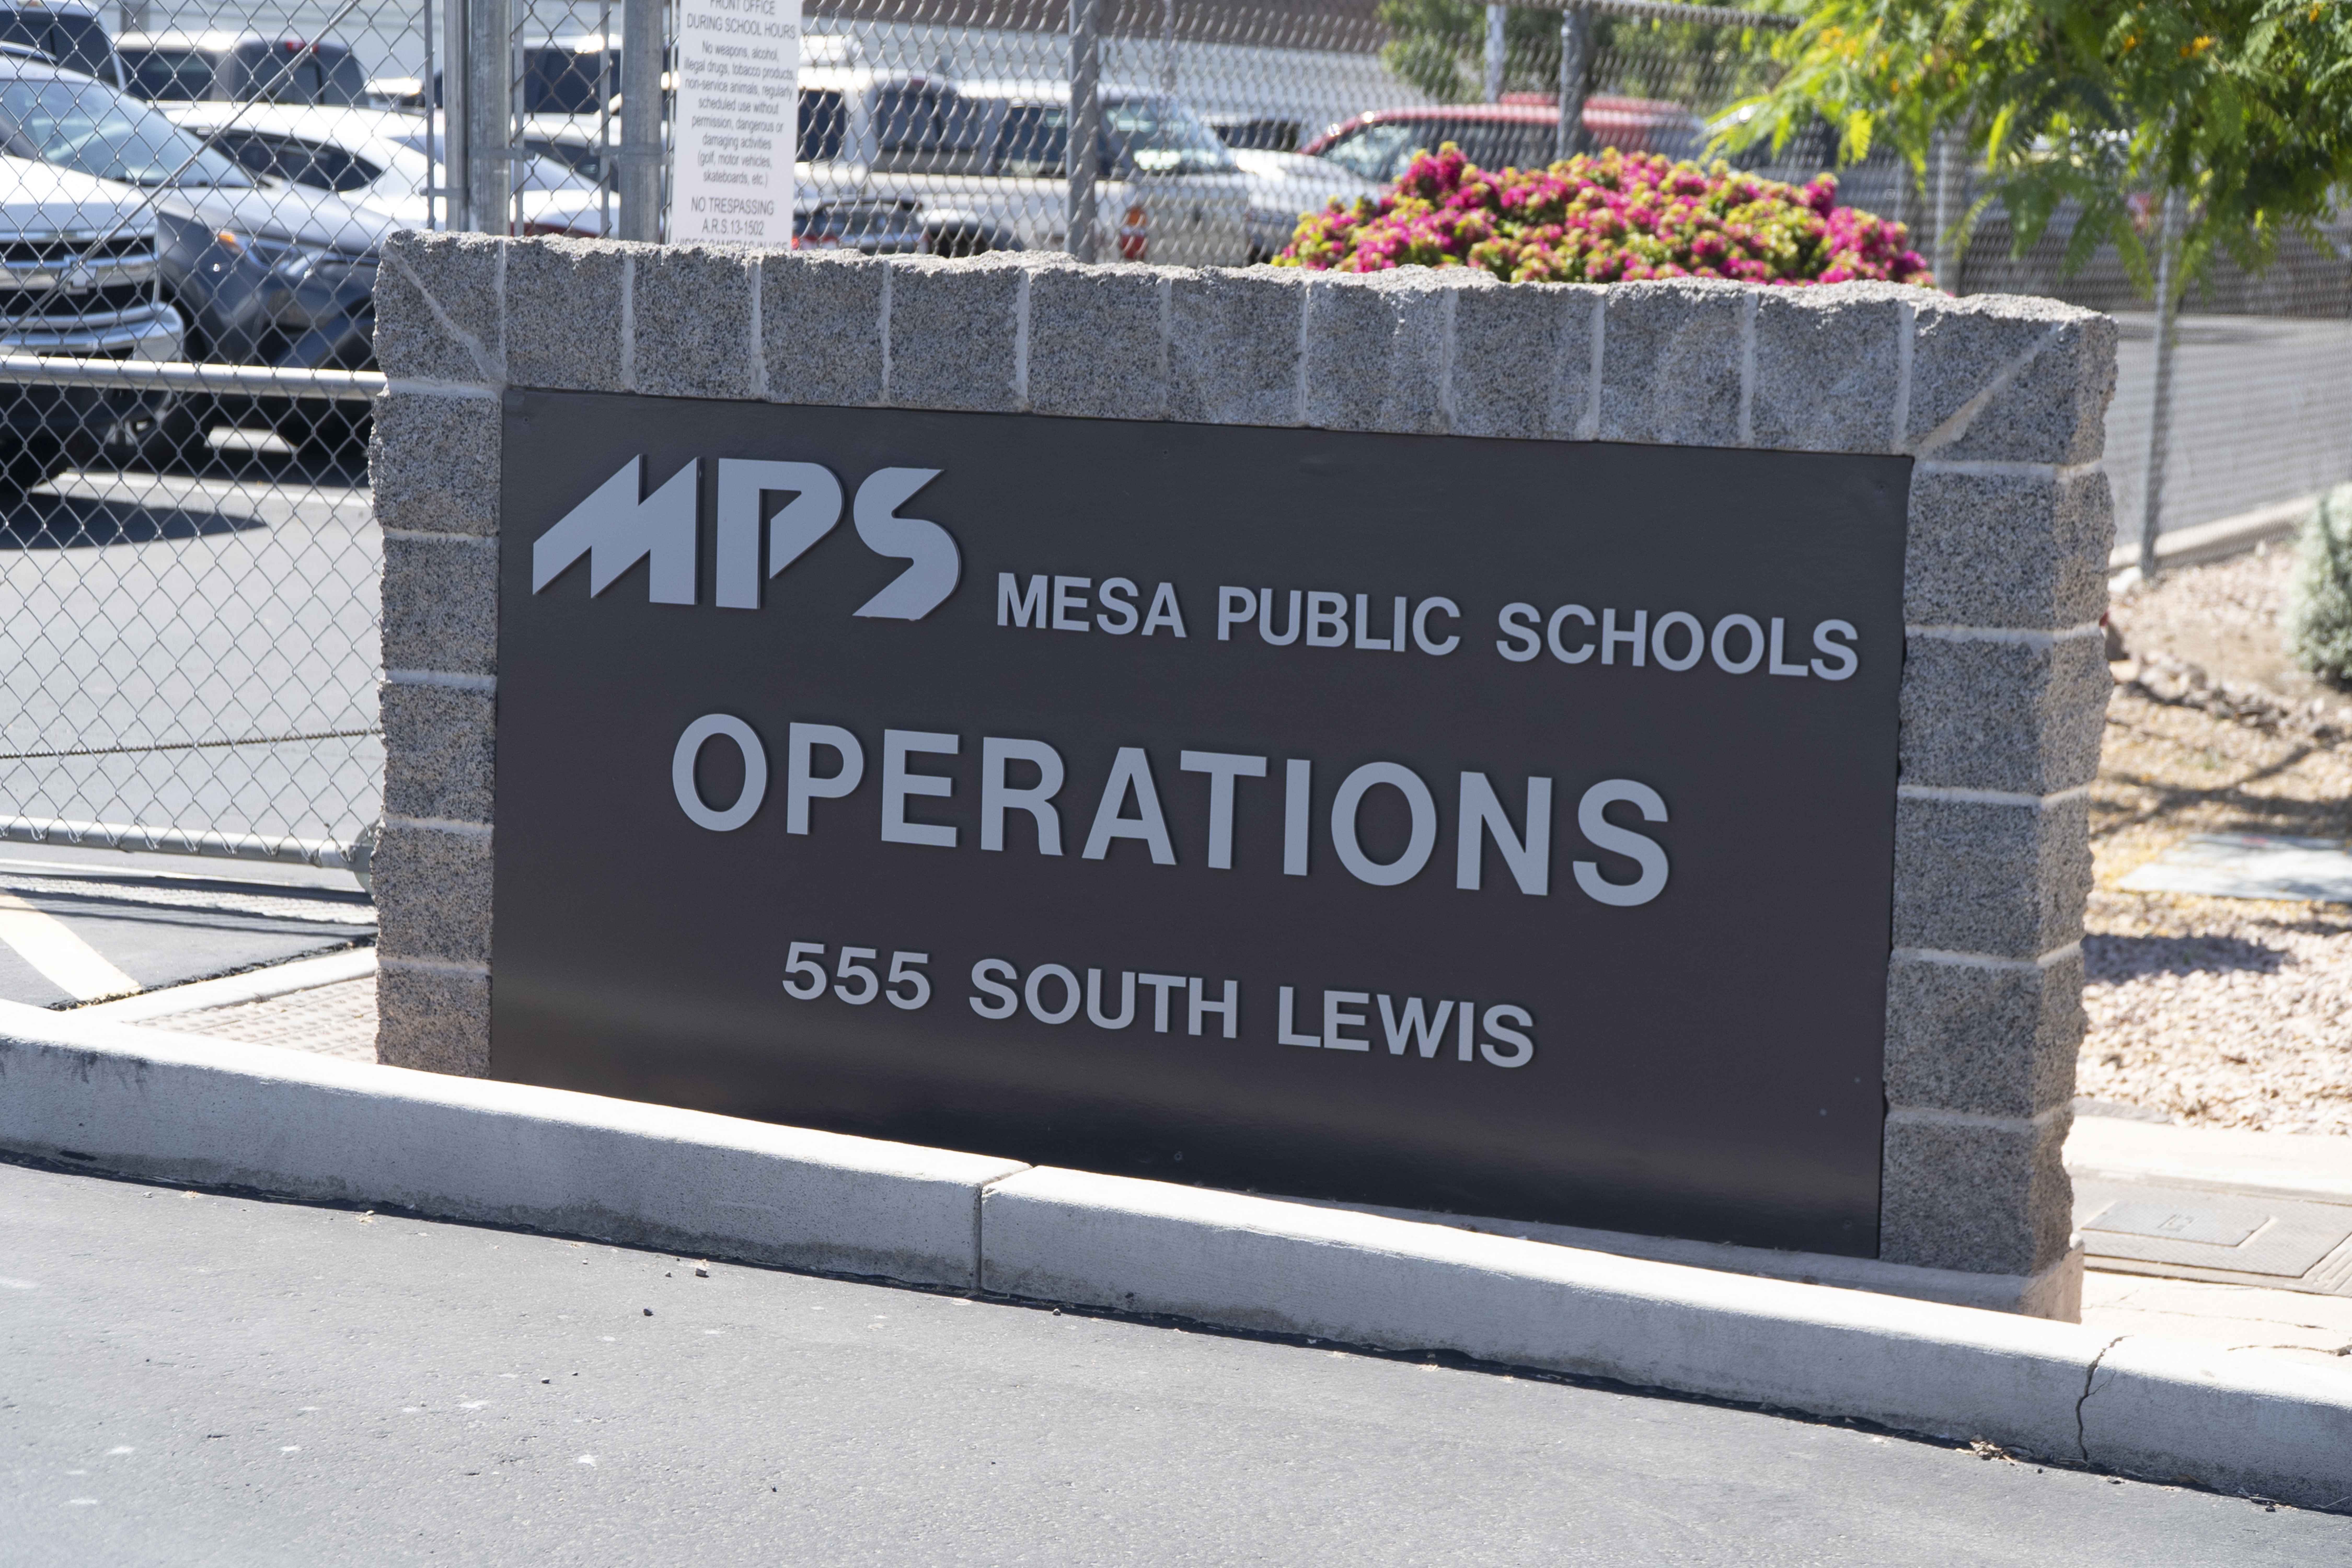 MPS Mesa Public Schools, Operations, 555 South Lewis sign